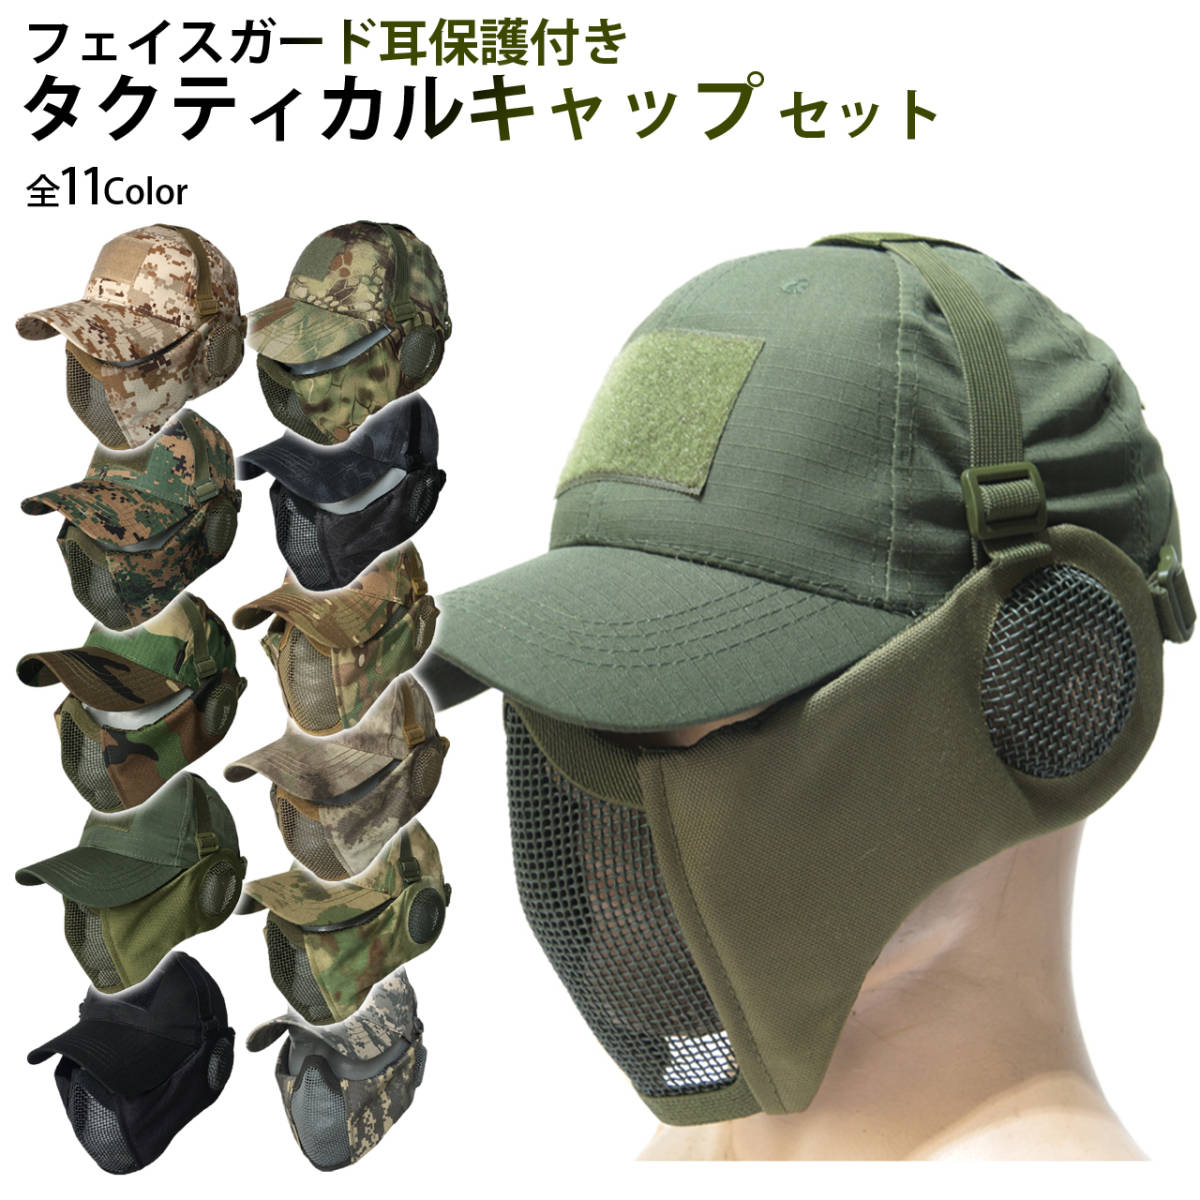 サバゲー マスク フェイスガード タクティカル キャップ セット 耳保護付き サバイバルゲーム 装備 (ブラック)の画像2